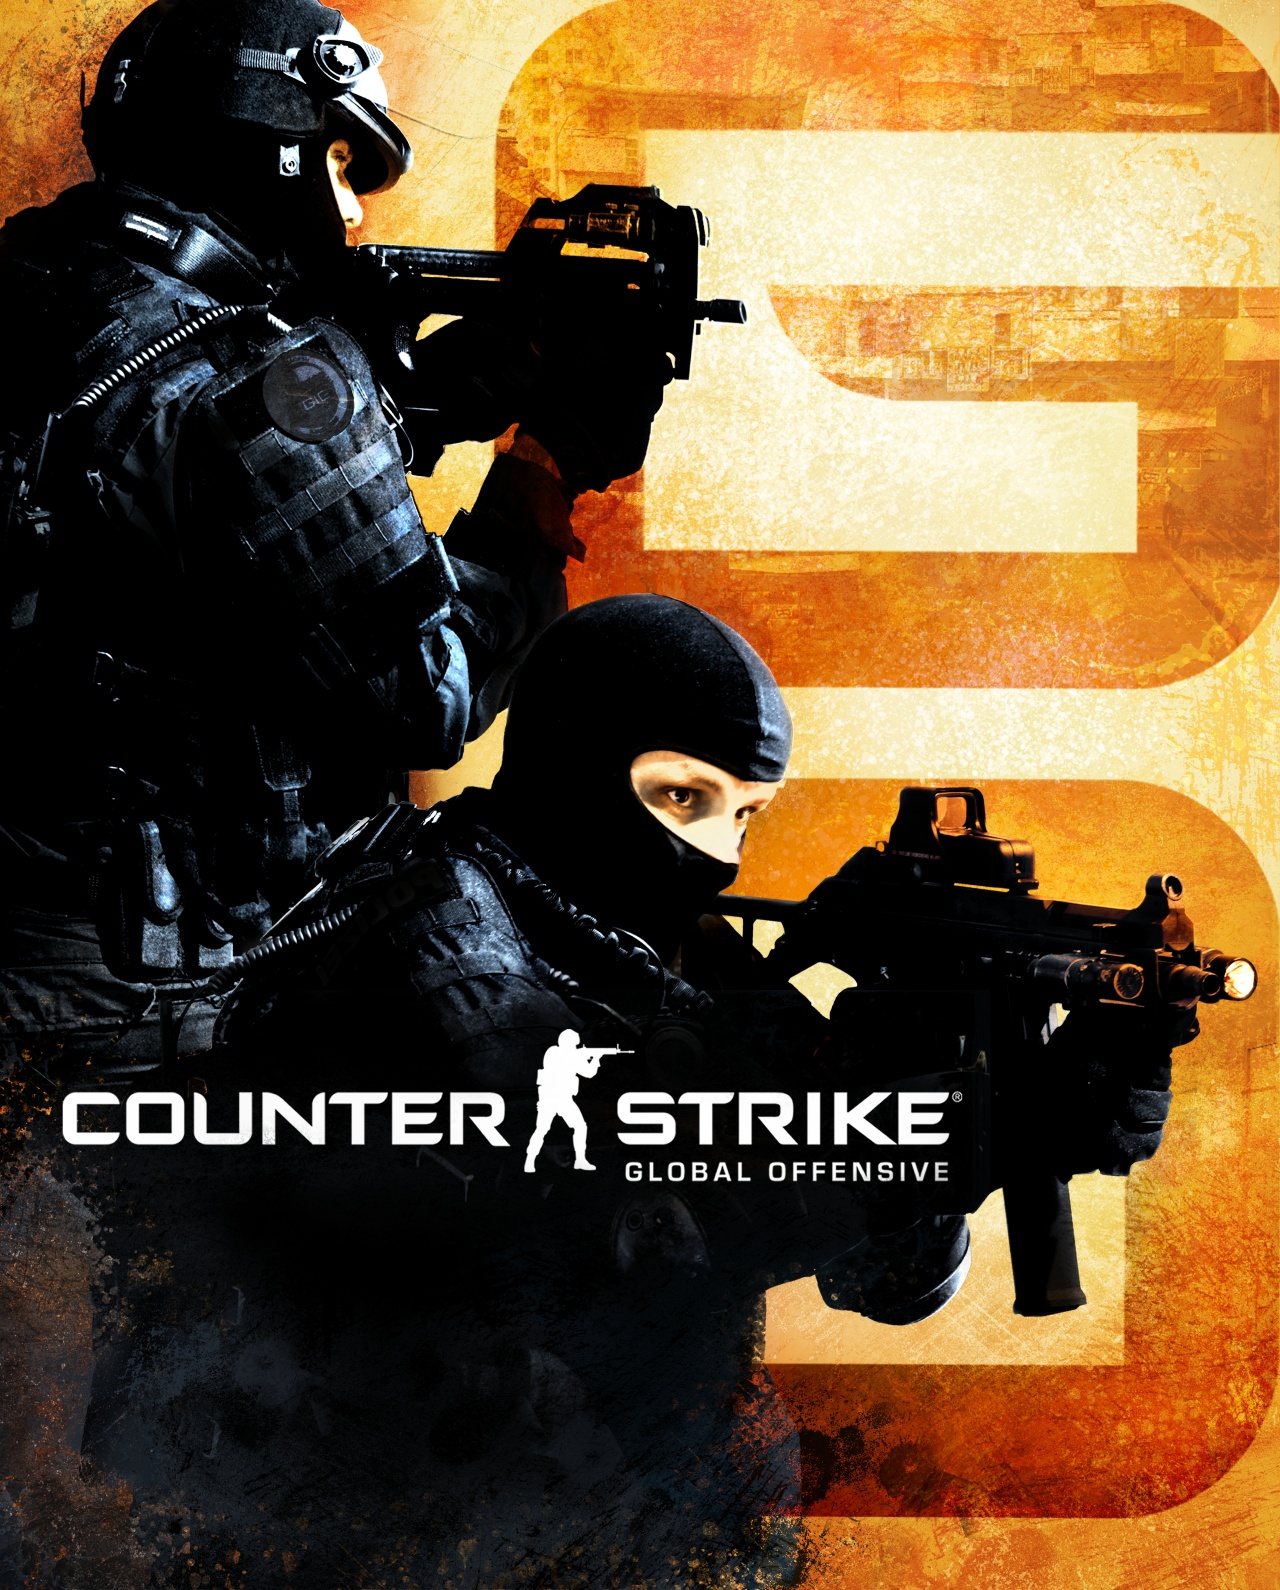 Обложка кс. Counter-Strike: Global Offensive. Counter-Strike: Global Offensive обложка. Контр страйк Глобал оффенсив. Counter Strike Global Offensive обложка игры.